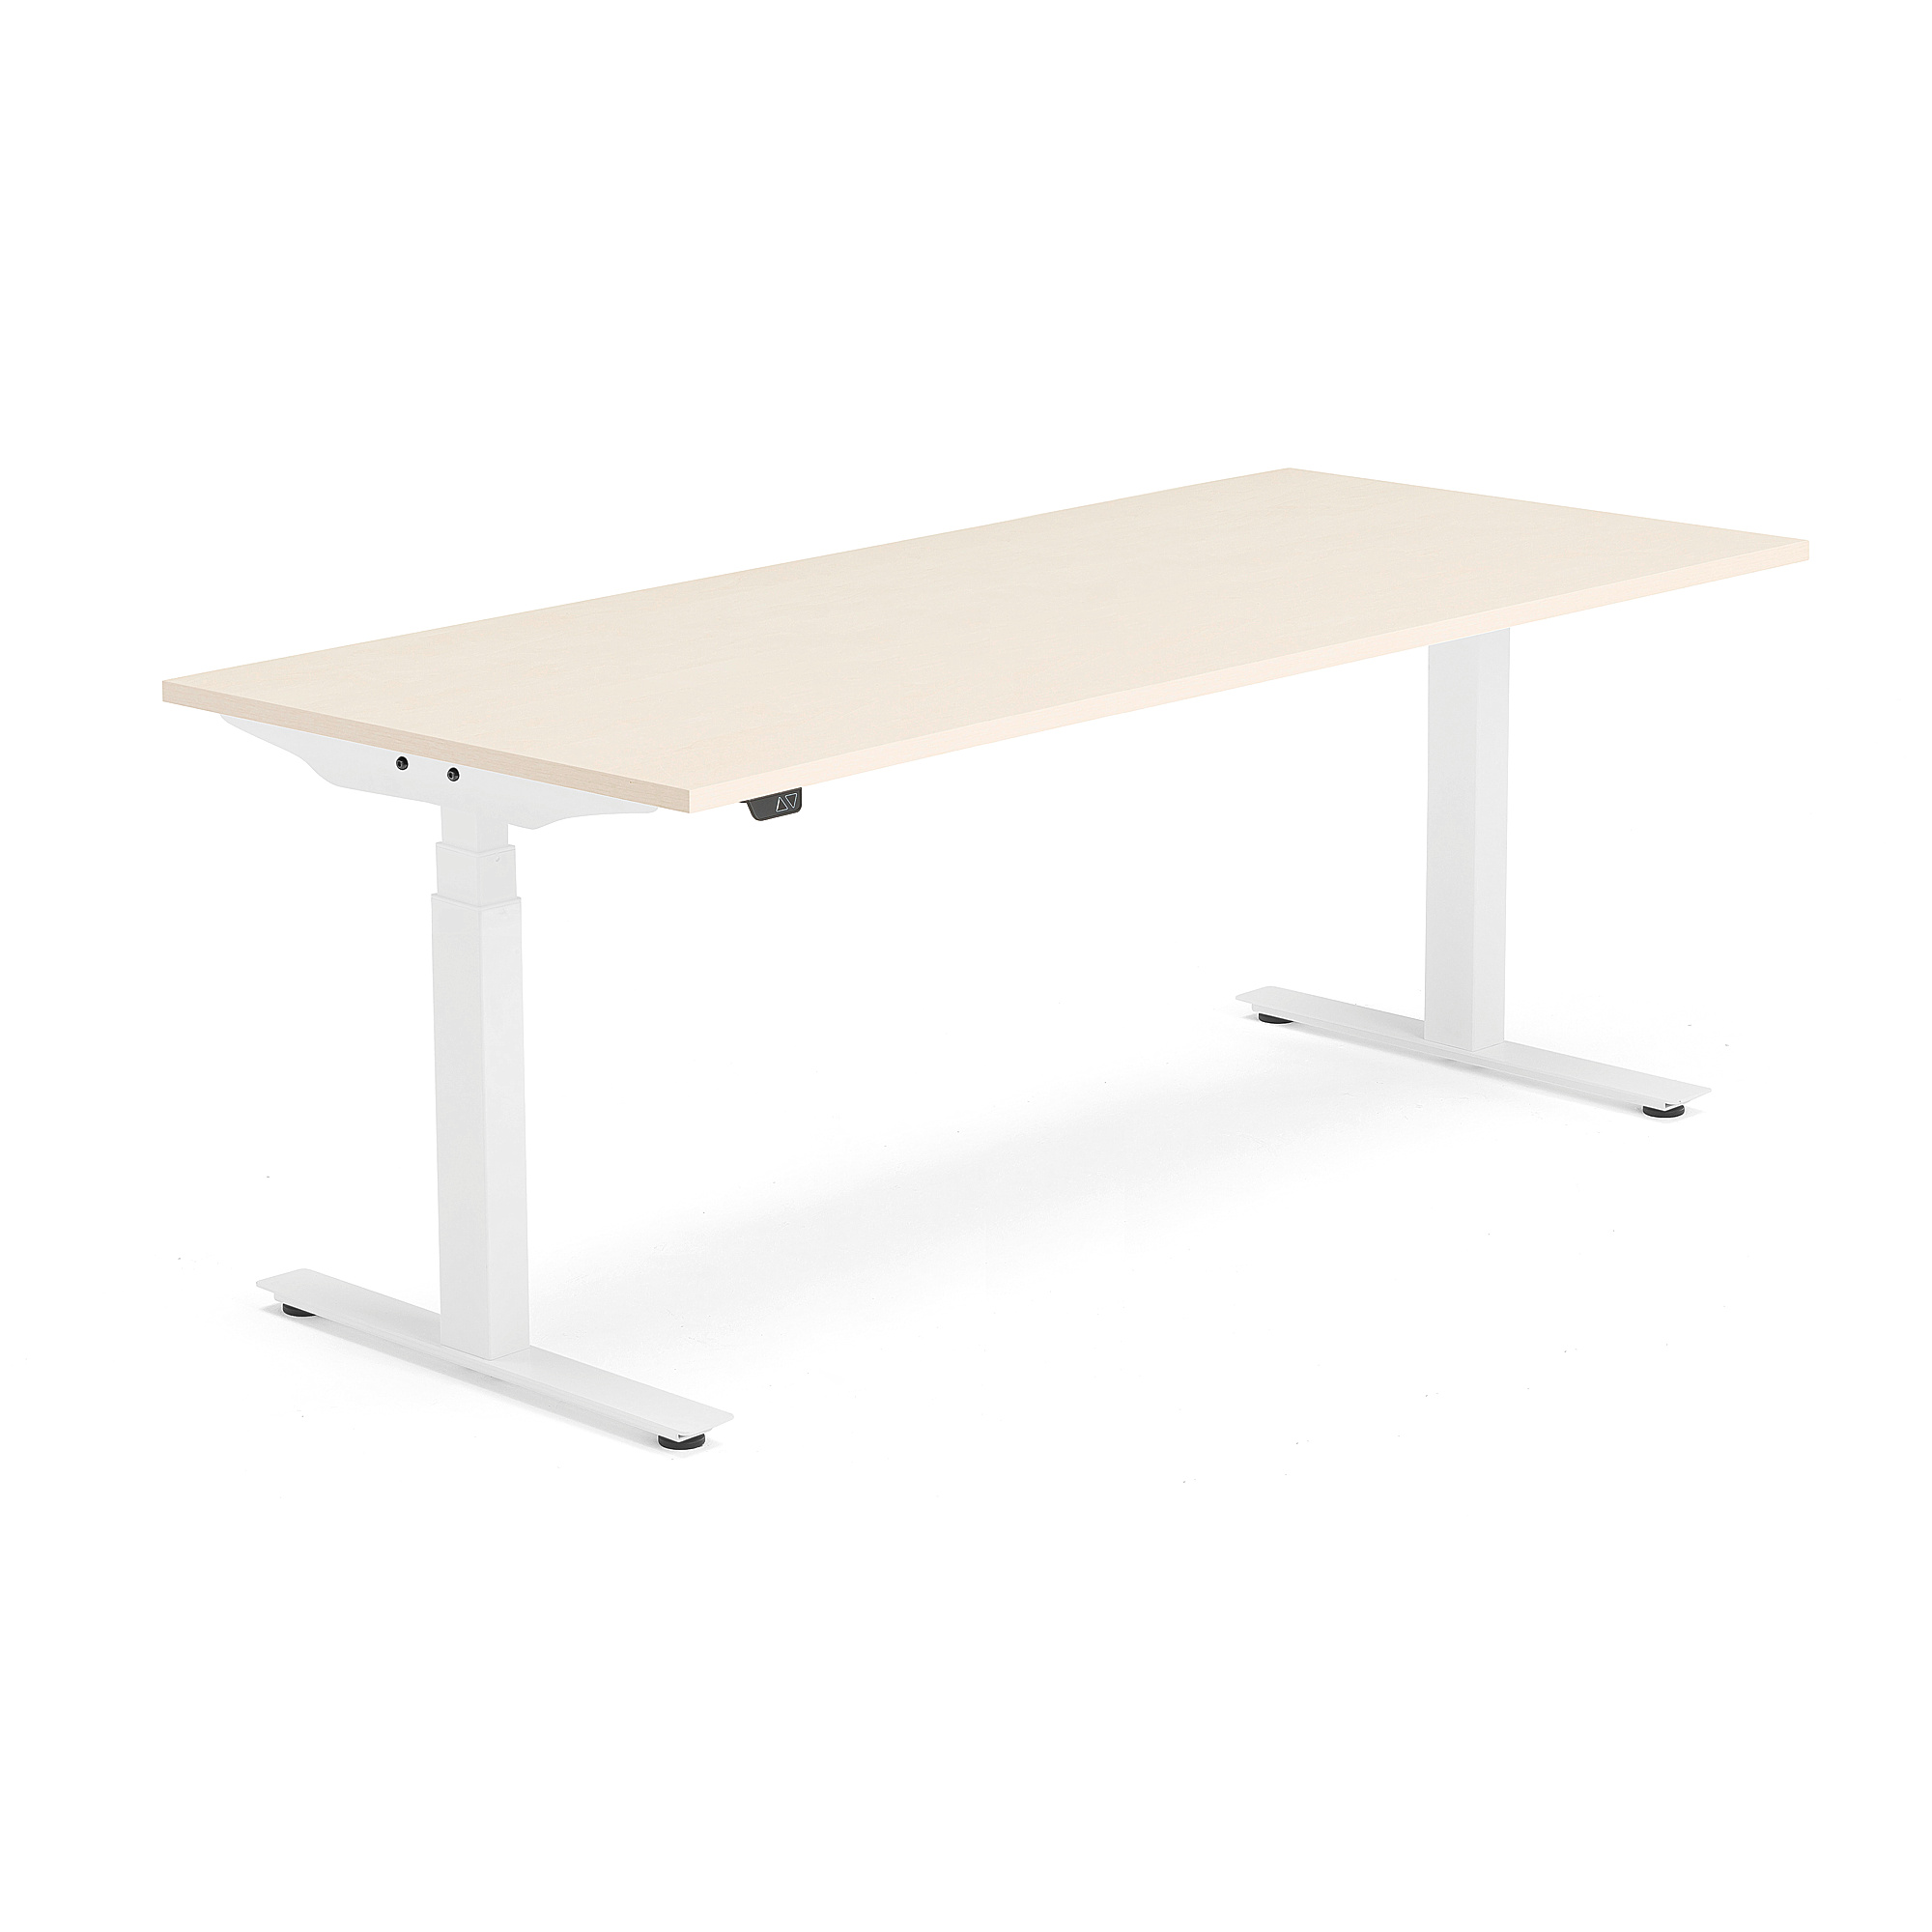 Výškově nastavitelný stůl MODULUS, 1800x800 mm, bílý rám, bříza